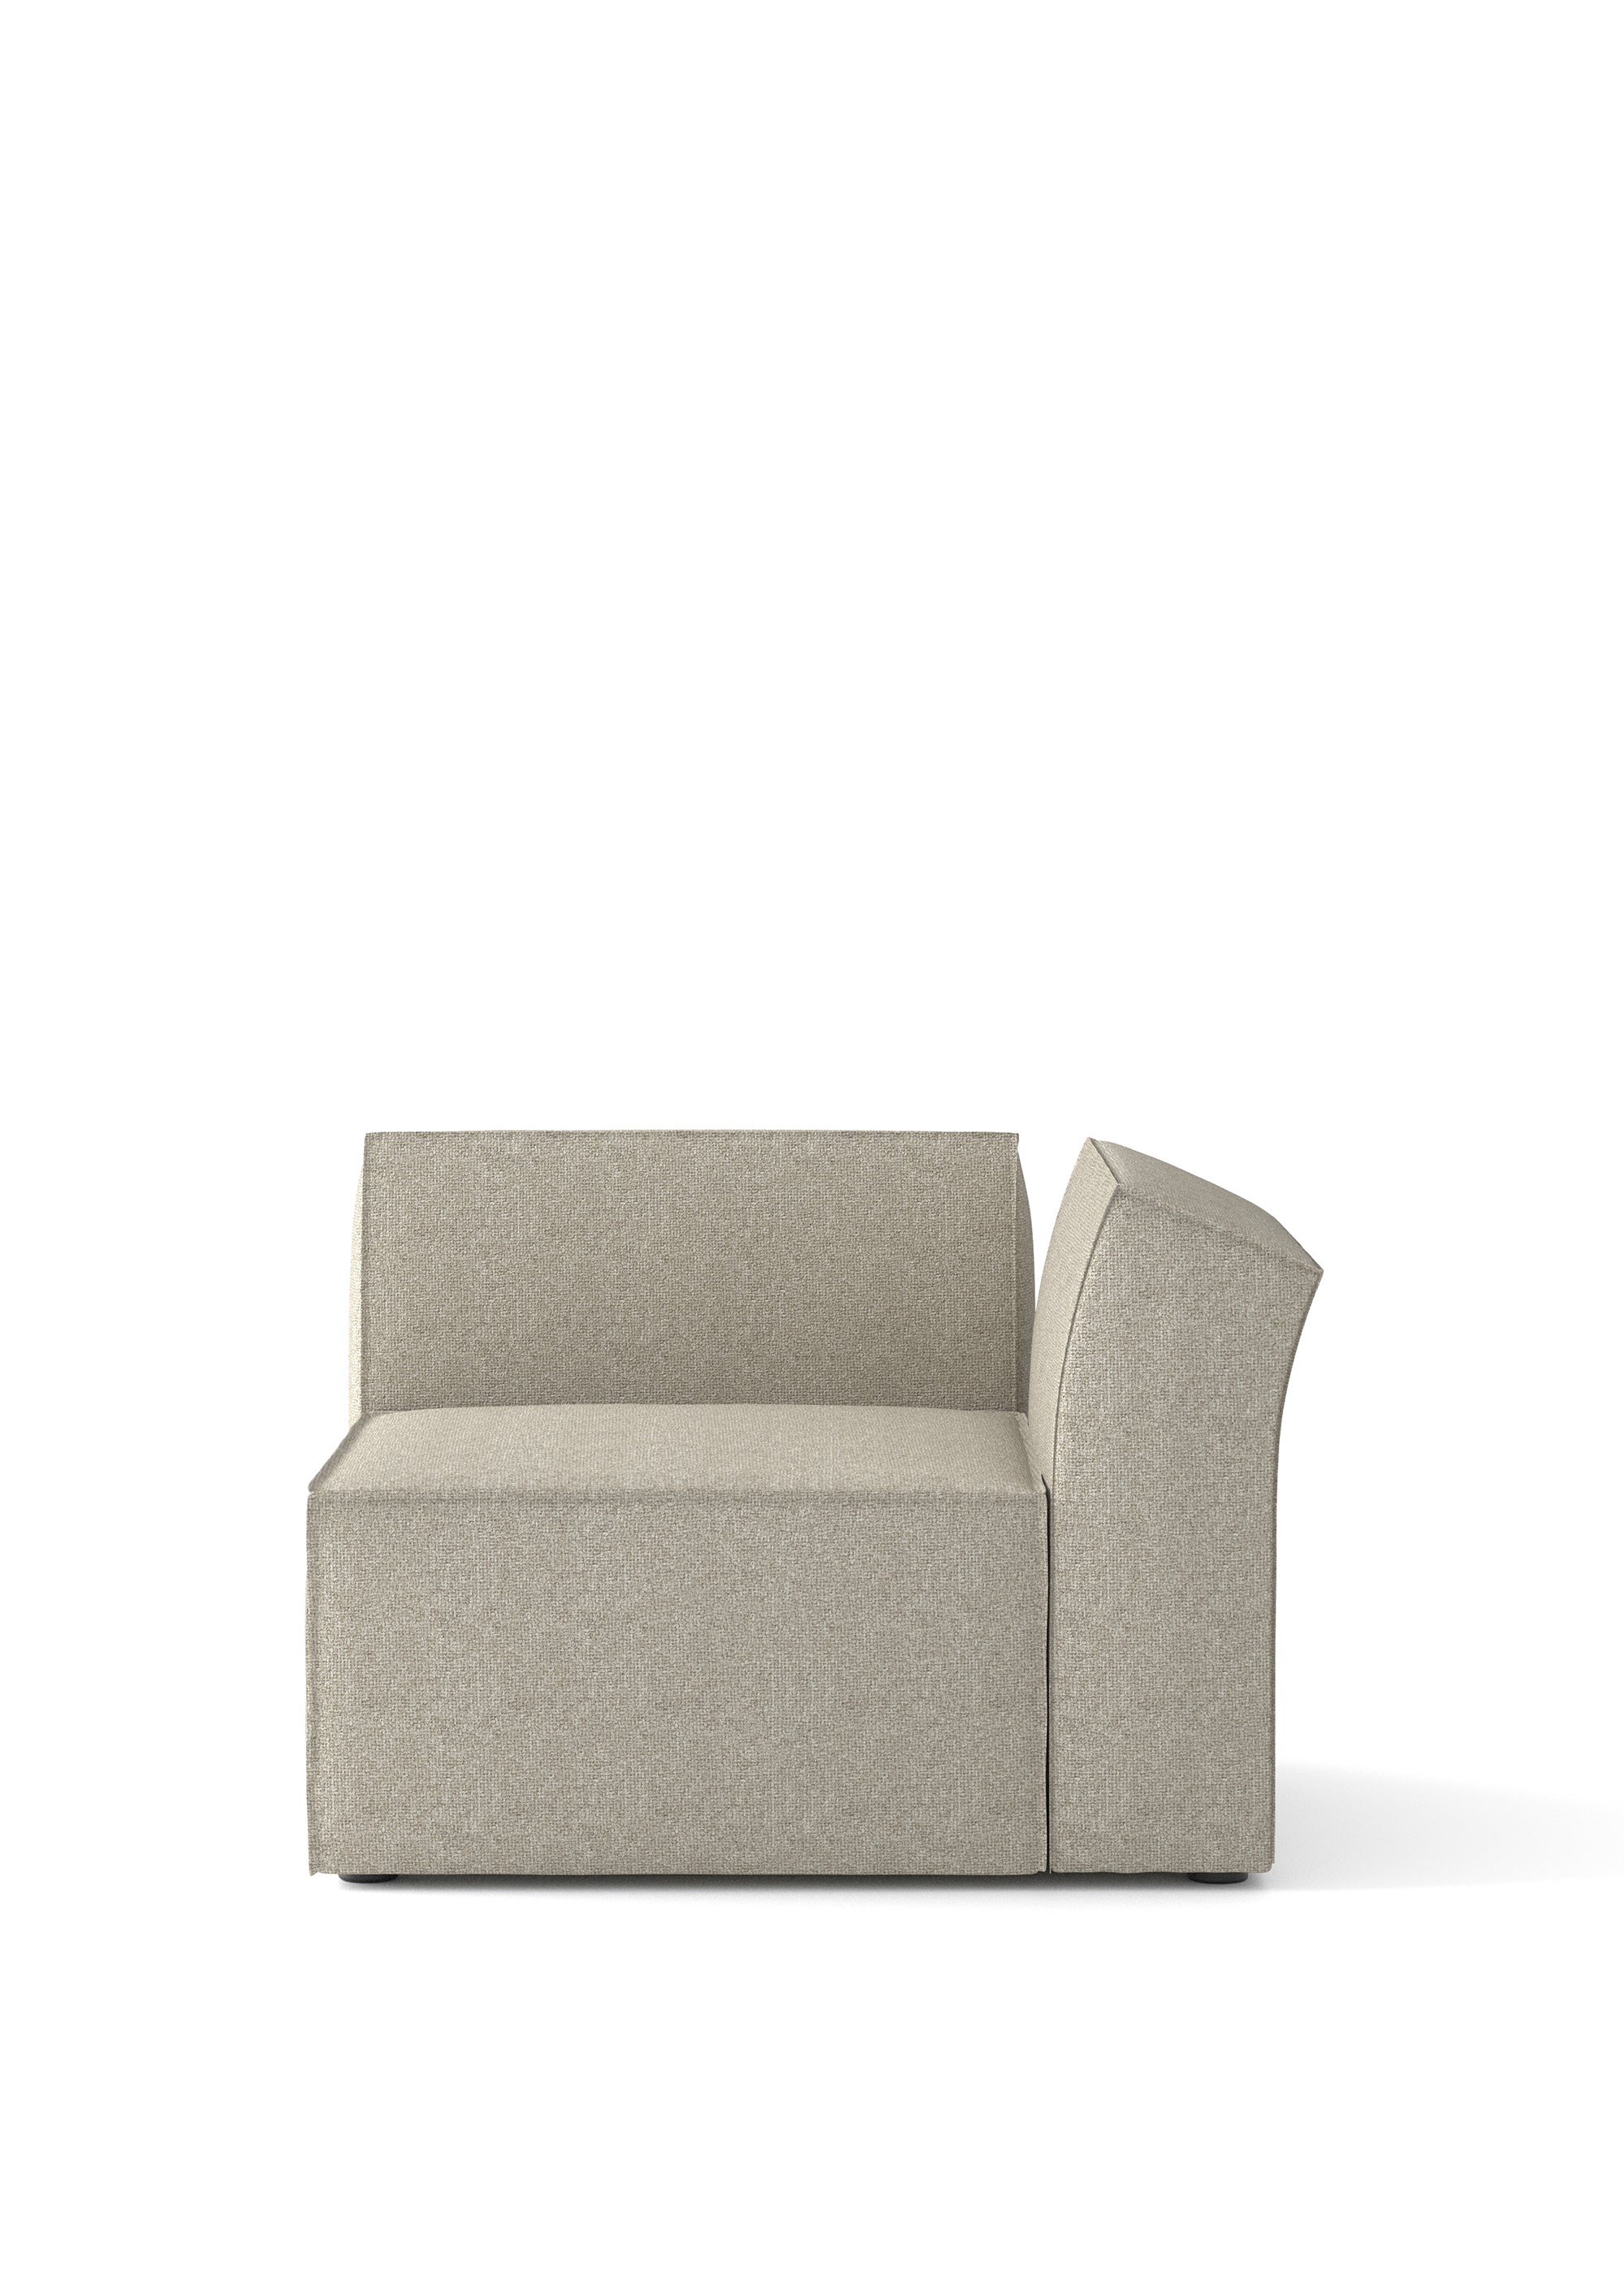 ANDO modular sofa